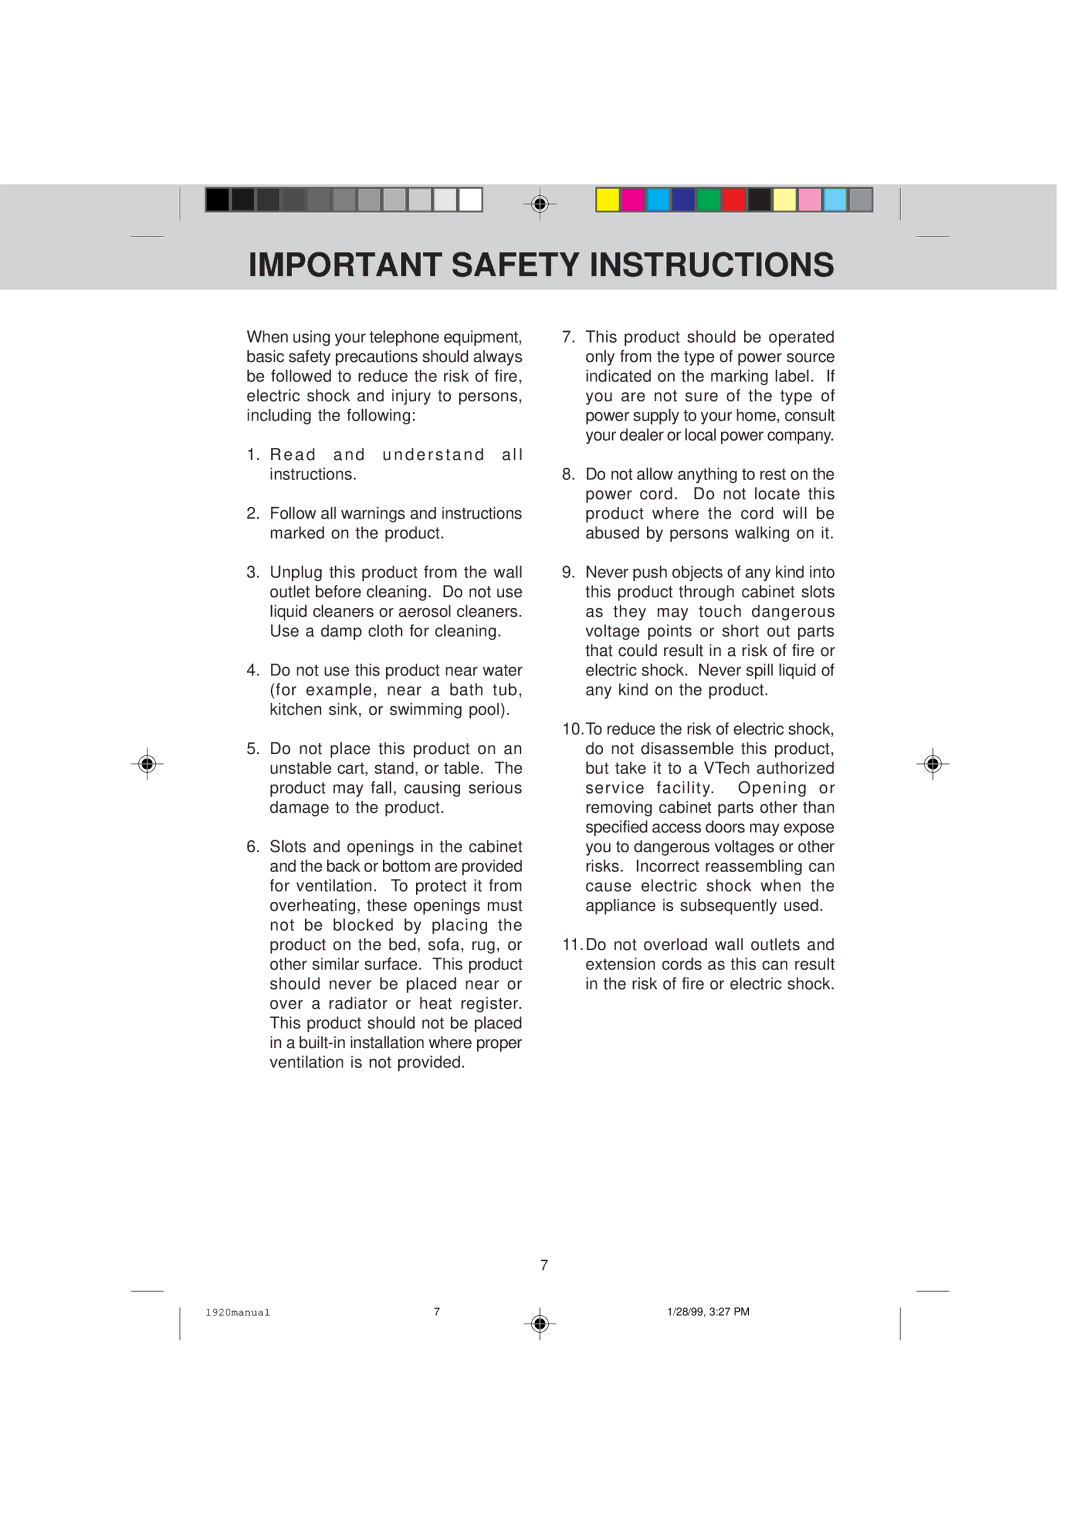 VTech VT 1920C manual Important Safety Instructions, E a d a n d u n d e r s t a n d a l l instructions 